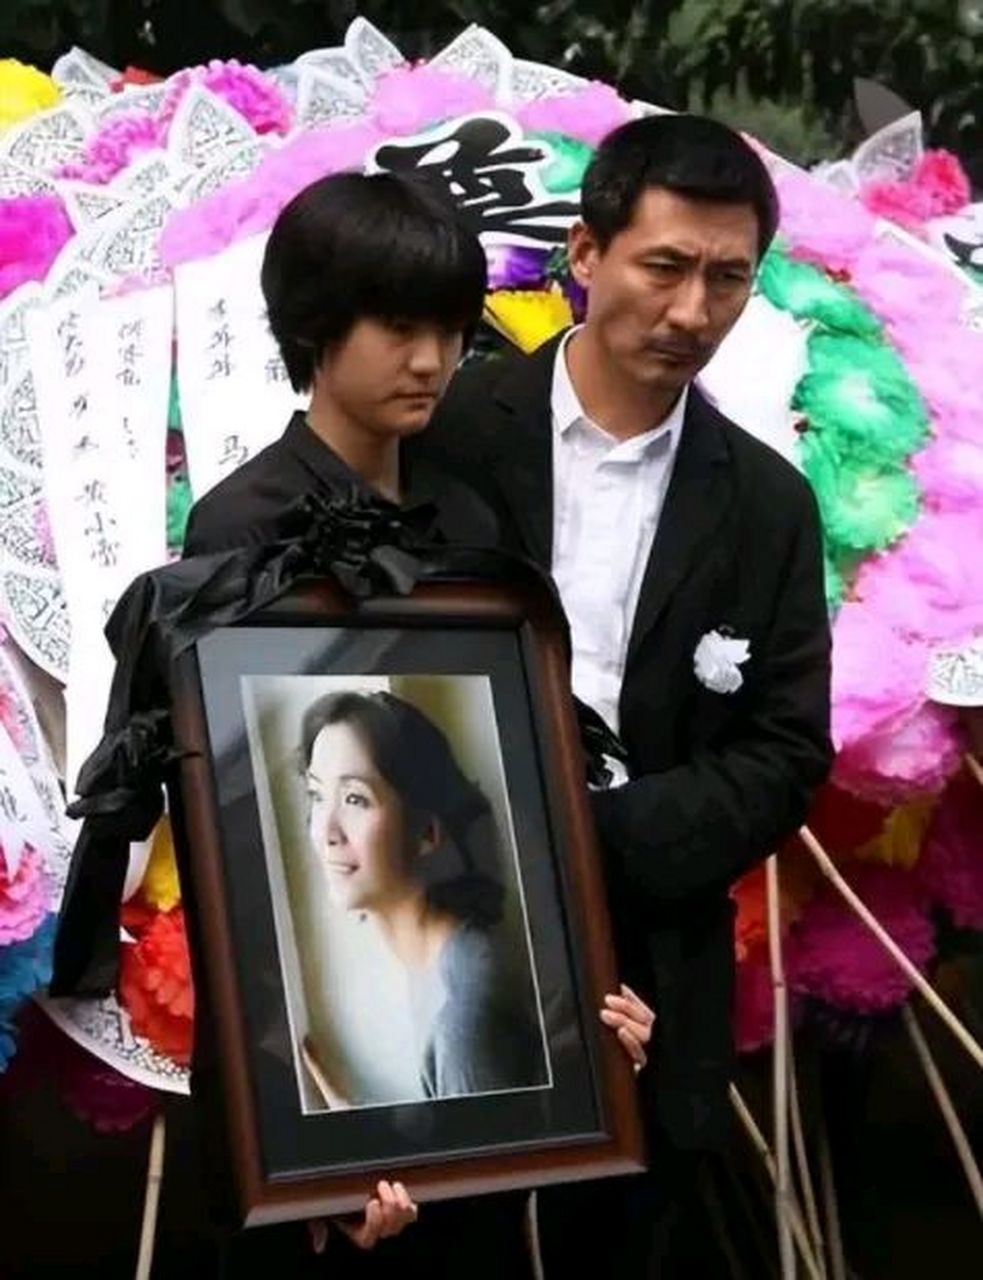 2005年,张子健刚拍完《神探狄仁杰》回家,妻子李婷毫无征兆地提出了